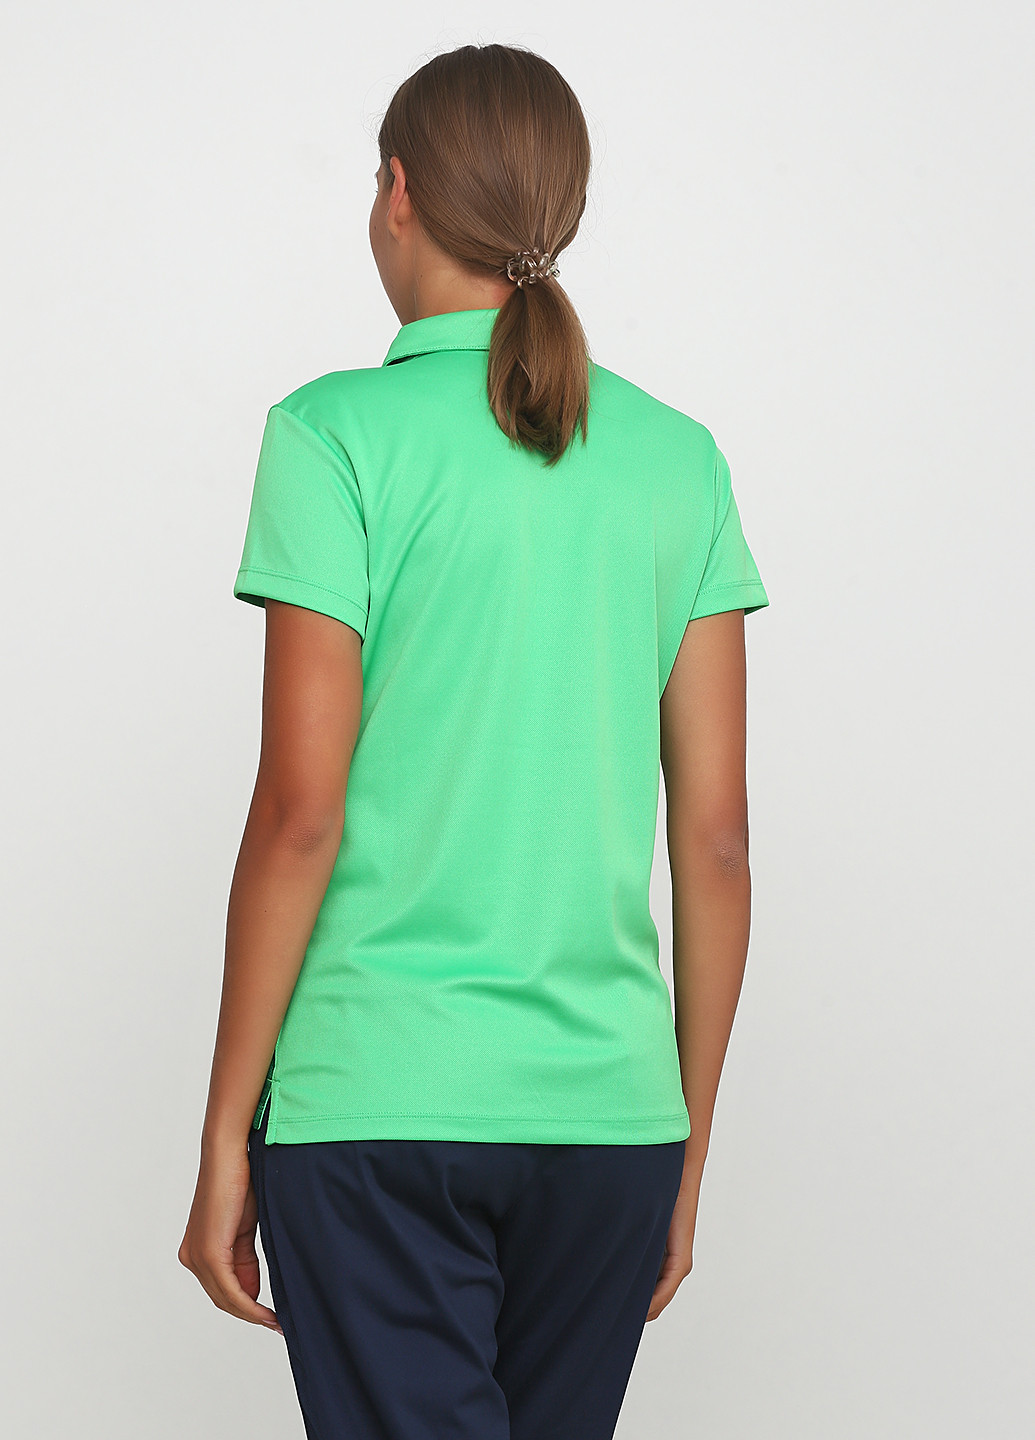 Салатовая женская футболка-поло Nike